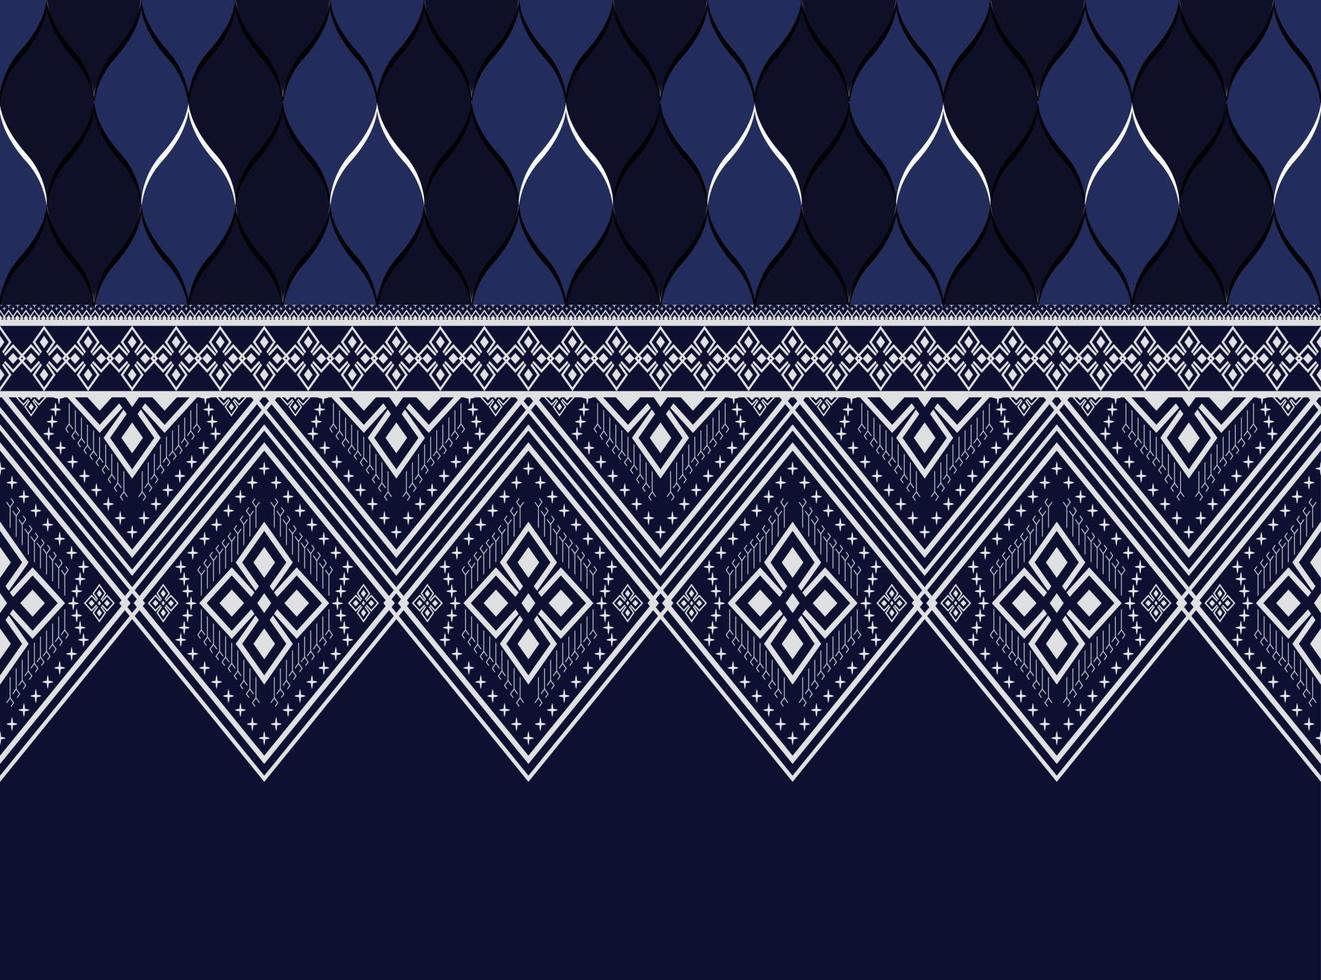 dunkelblaues geometrisches ethnisches muster für hintergrund oder tapete und kleidung, rock, teppich, tapete, kleidung, verpackung, batik, stoff, kleidung, mit dunkelblauem dreieckvektor, illustration vektor